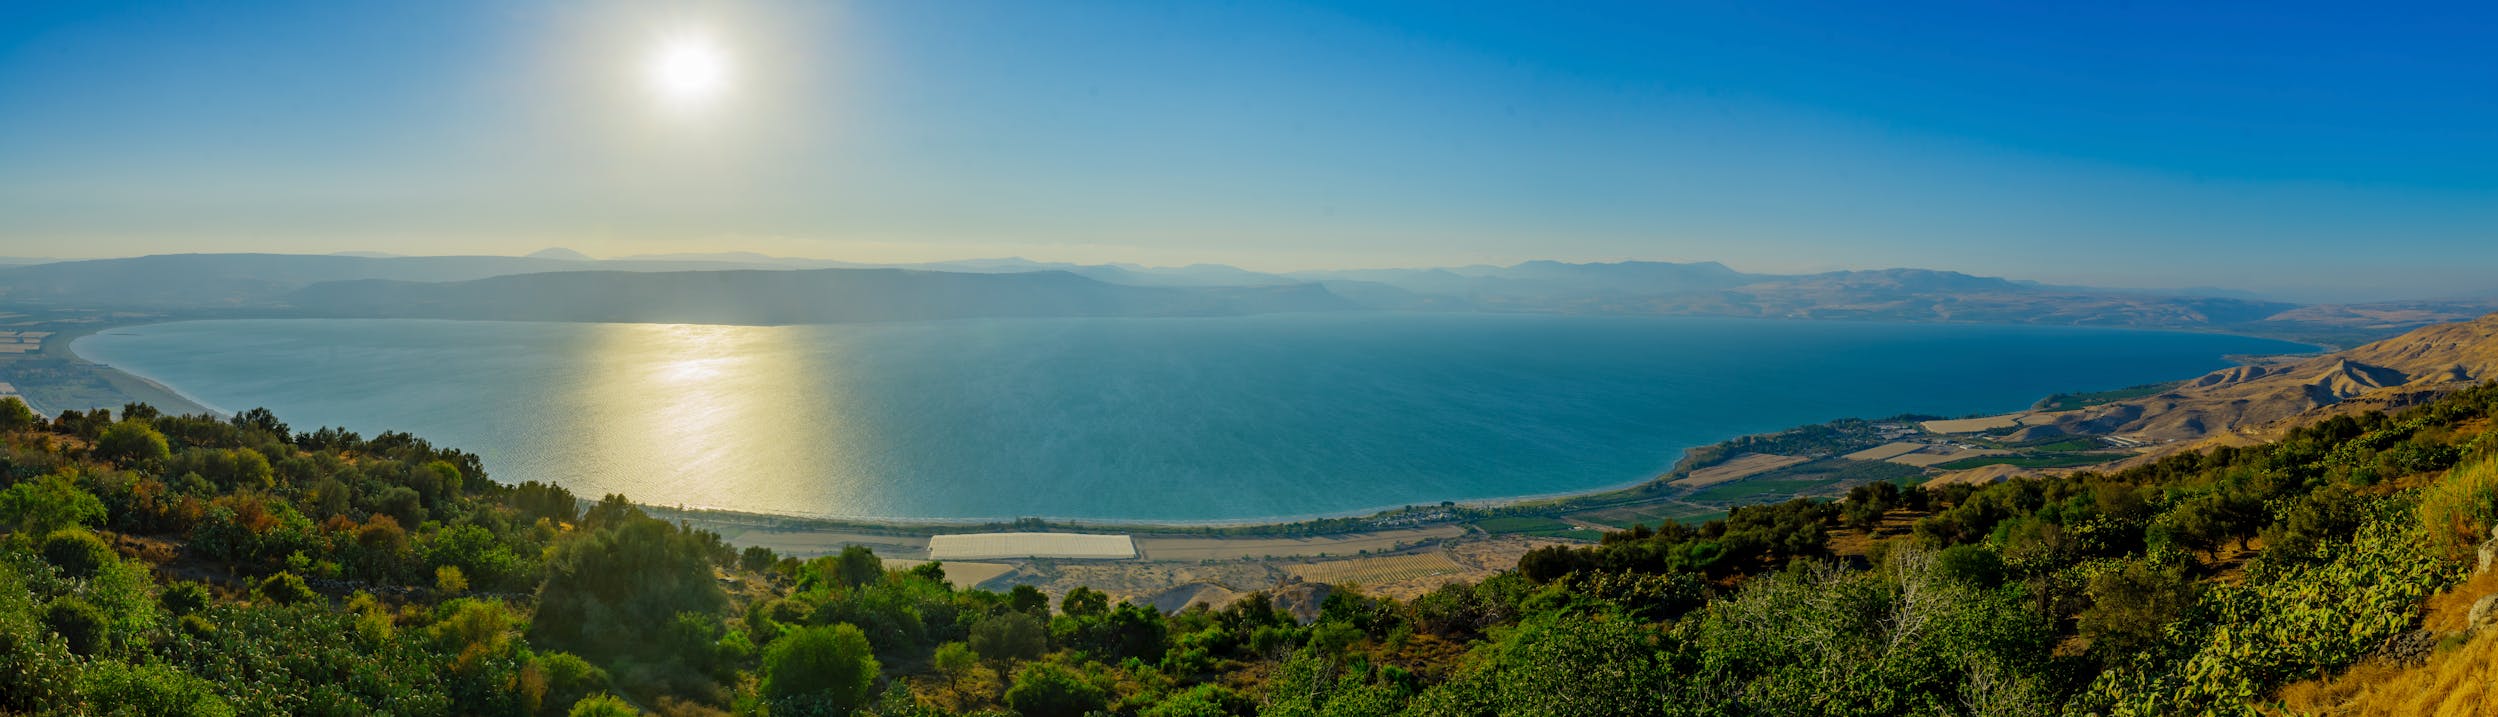 Озеро Кинерет в Израиле